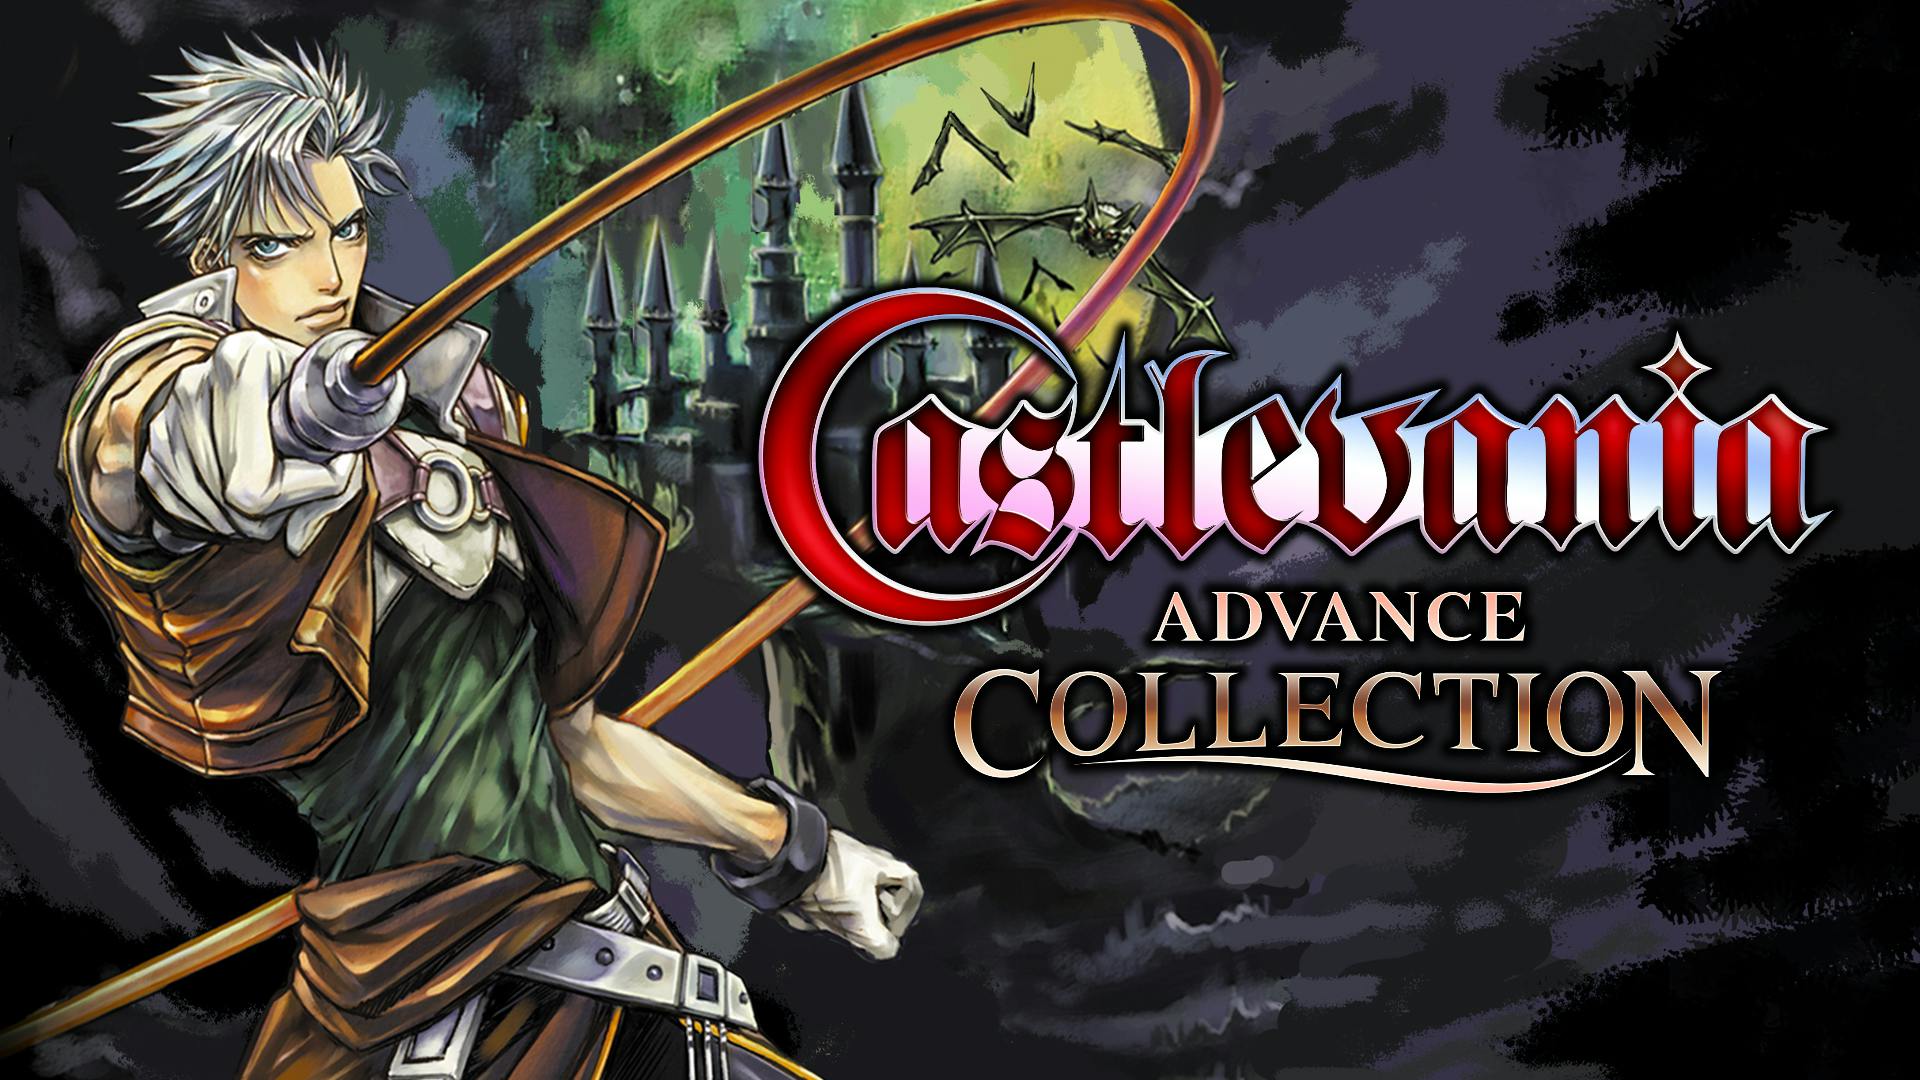 Advance collection. Castlevania collection. Castlevania Advanced collection. Castlevania Advance. Castlevania Advance collection game.